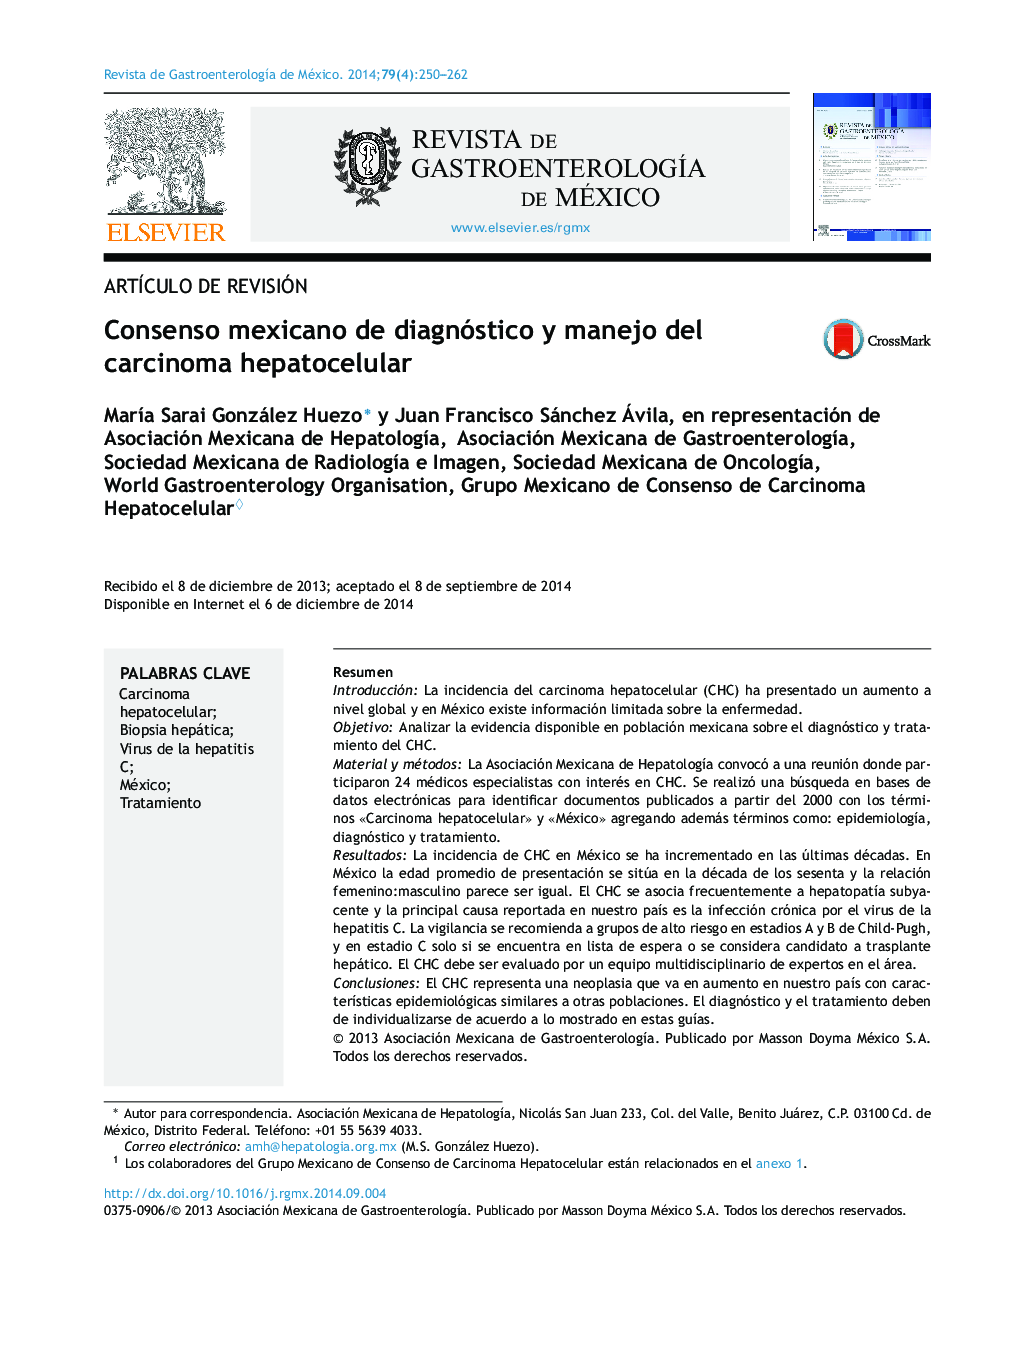 Consenso mexicano de diagnóstico y manejo del carcinoma hepatocelular